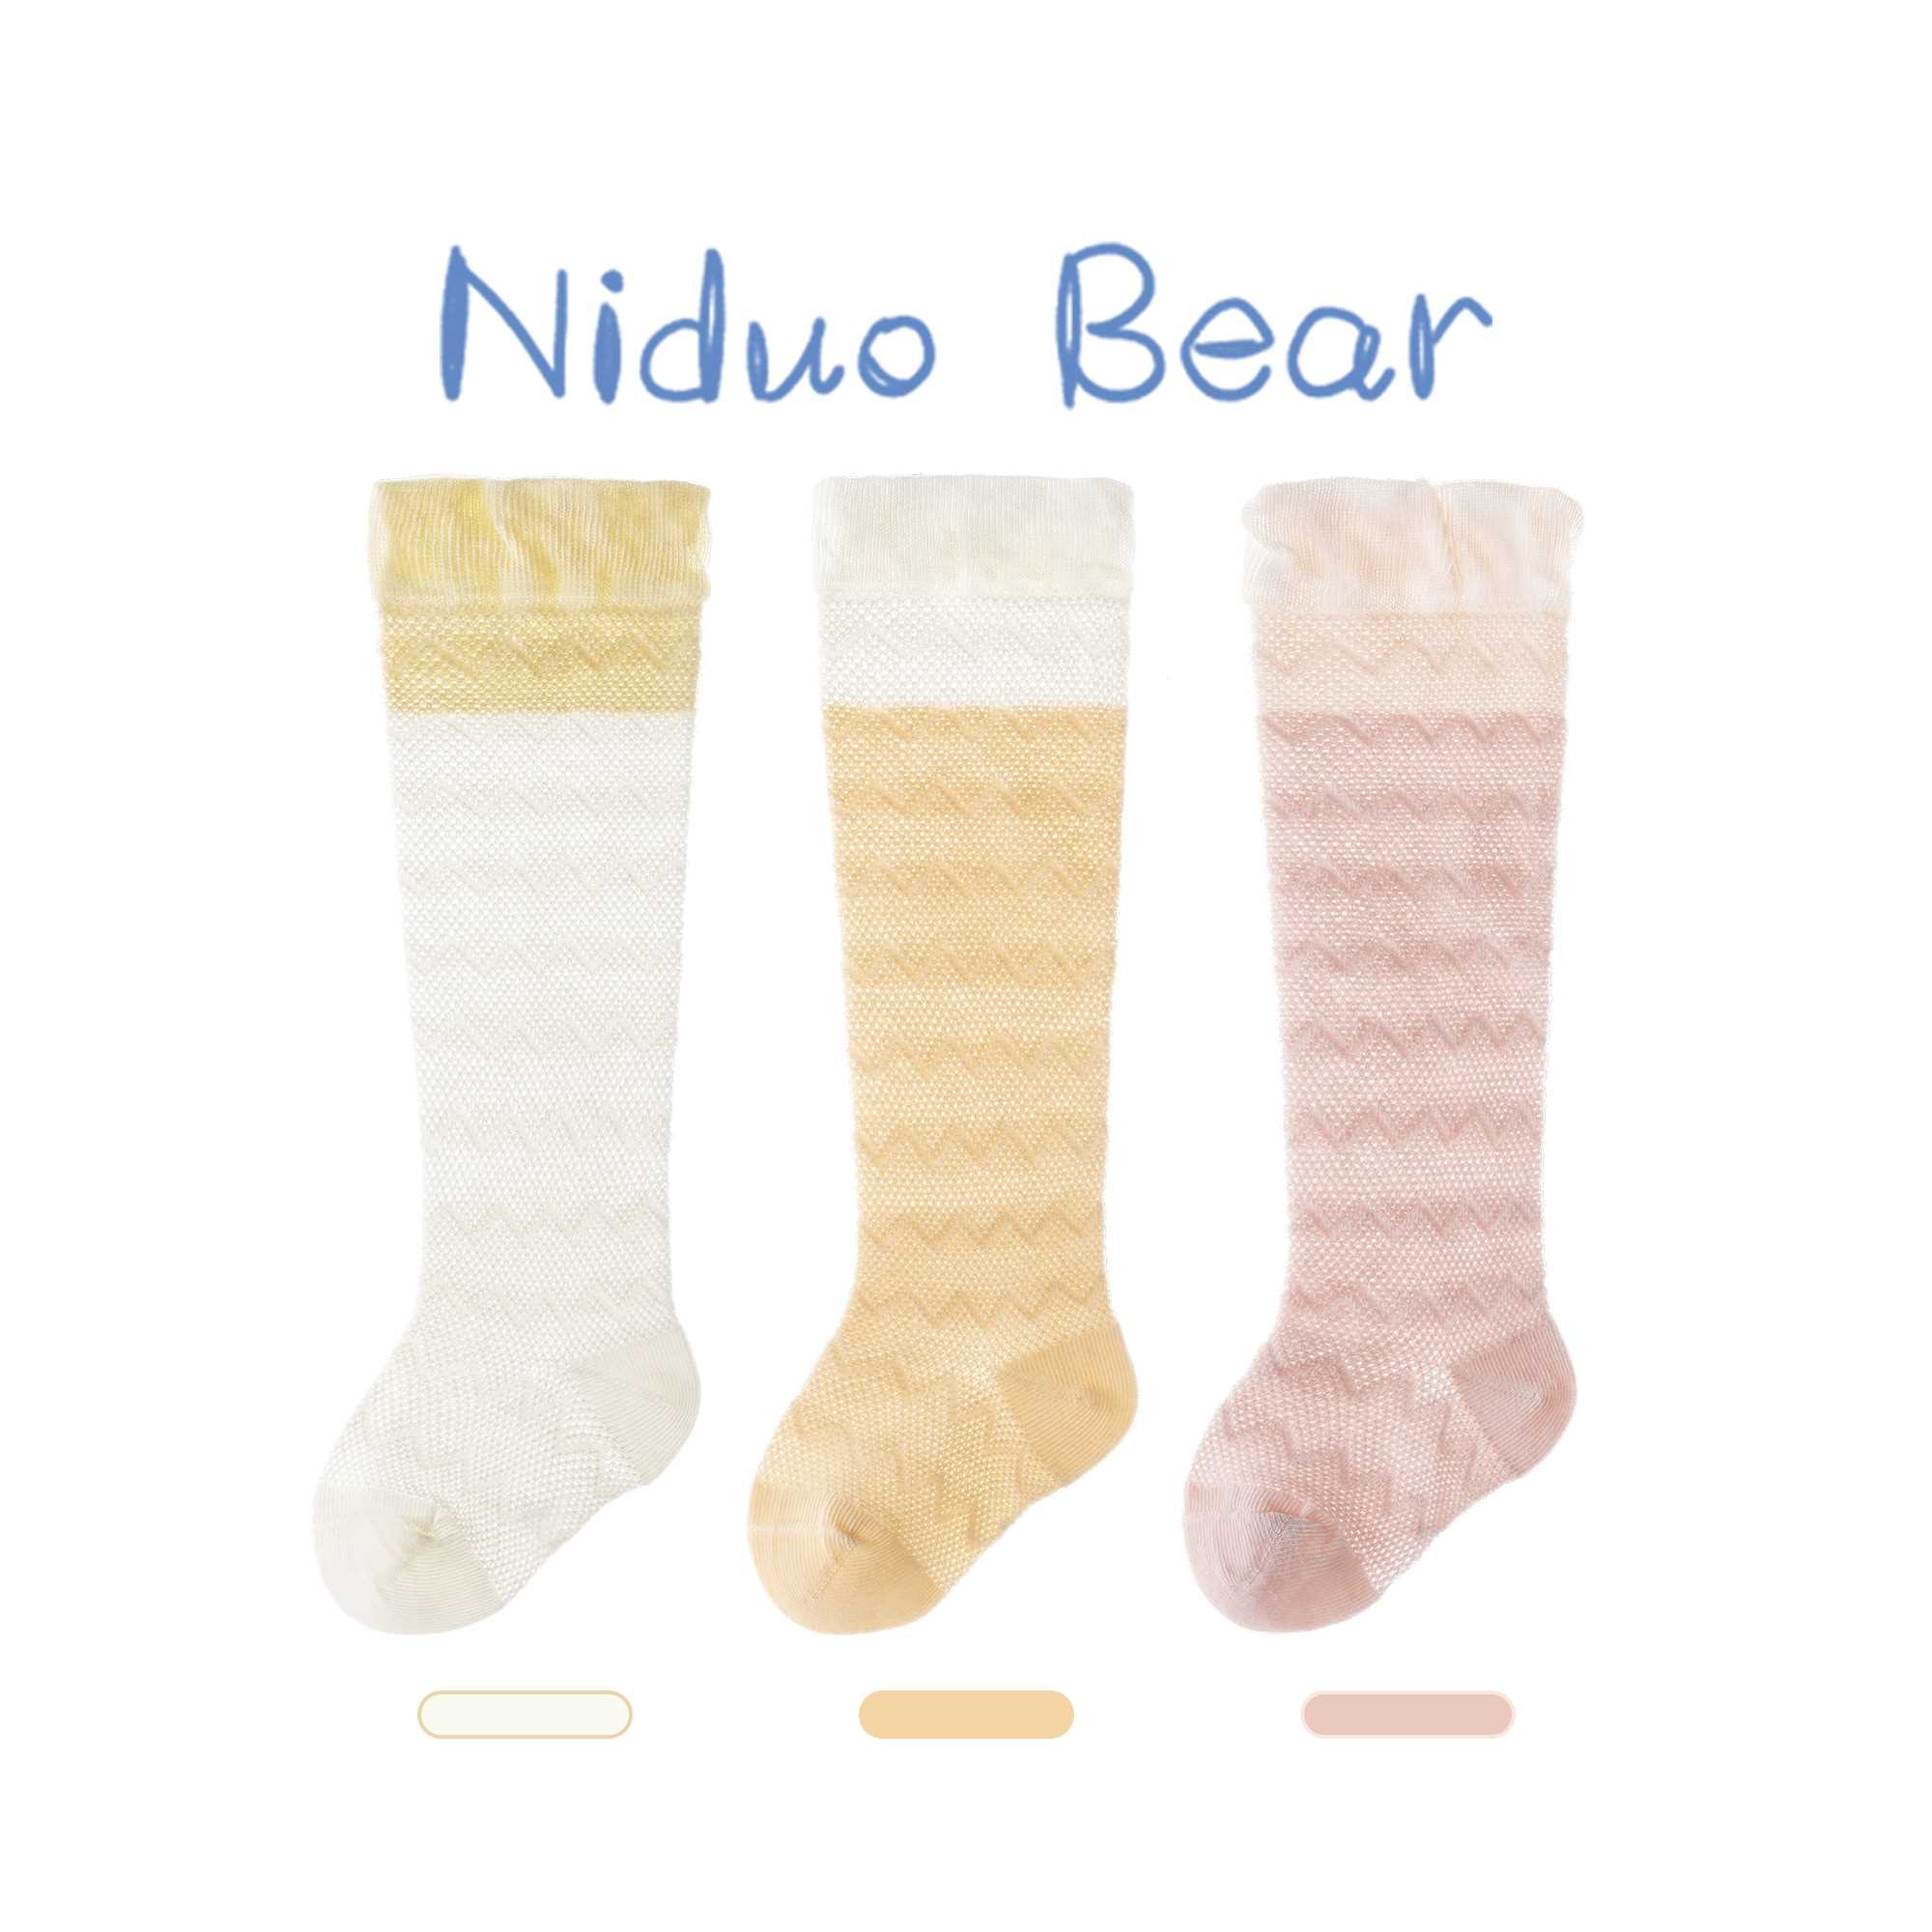 尼多2熊022婴儿长筒袜夏季薄款宝宝袜子春夏棉松口不勒脚防蚊袜